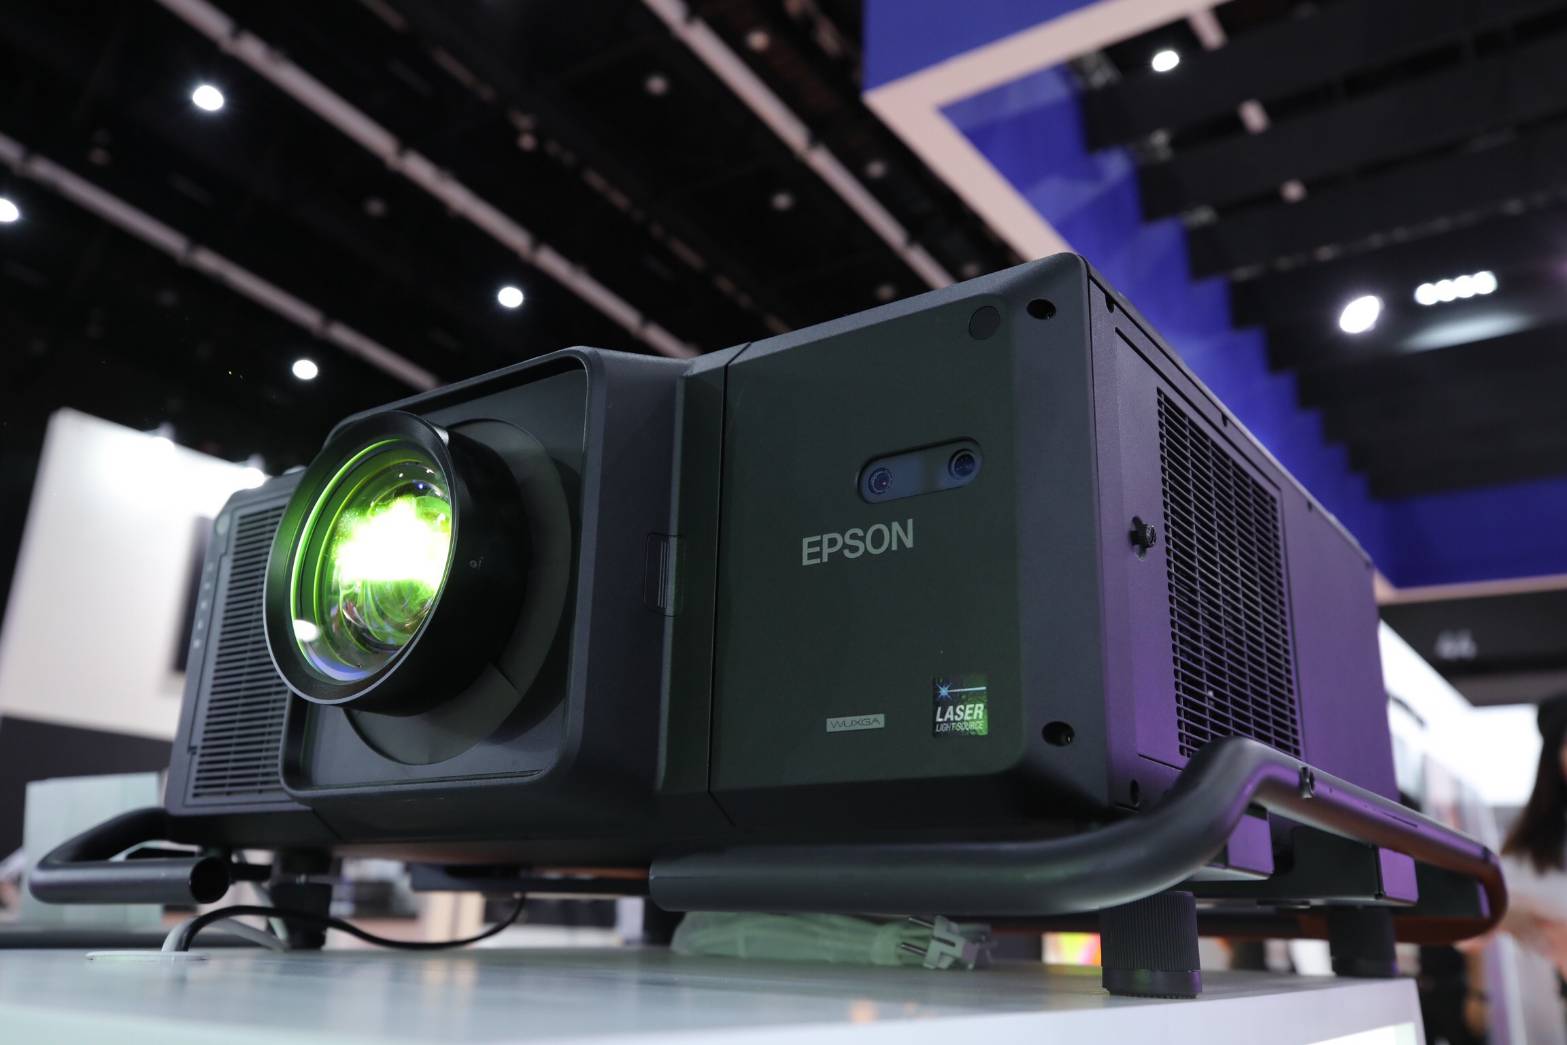 EPSON เปิดตัวเลเซอร์โปรเจคเตอร์ 3LCD ความสว่าง 30,000 ลูเมนส์ เครื่องแรกของโลก